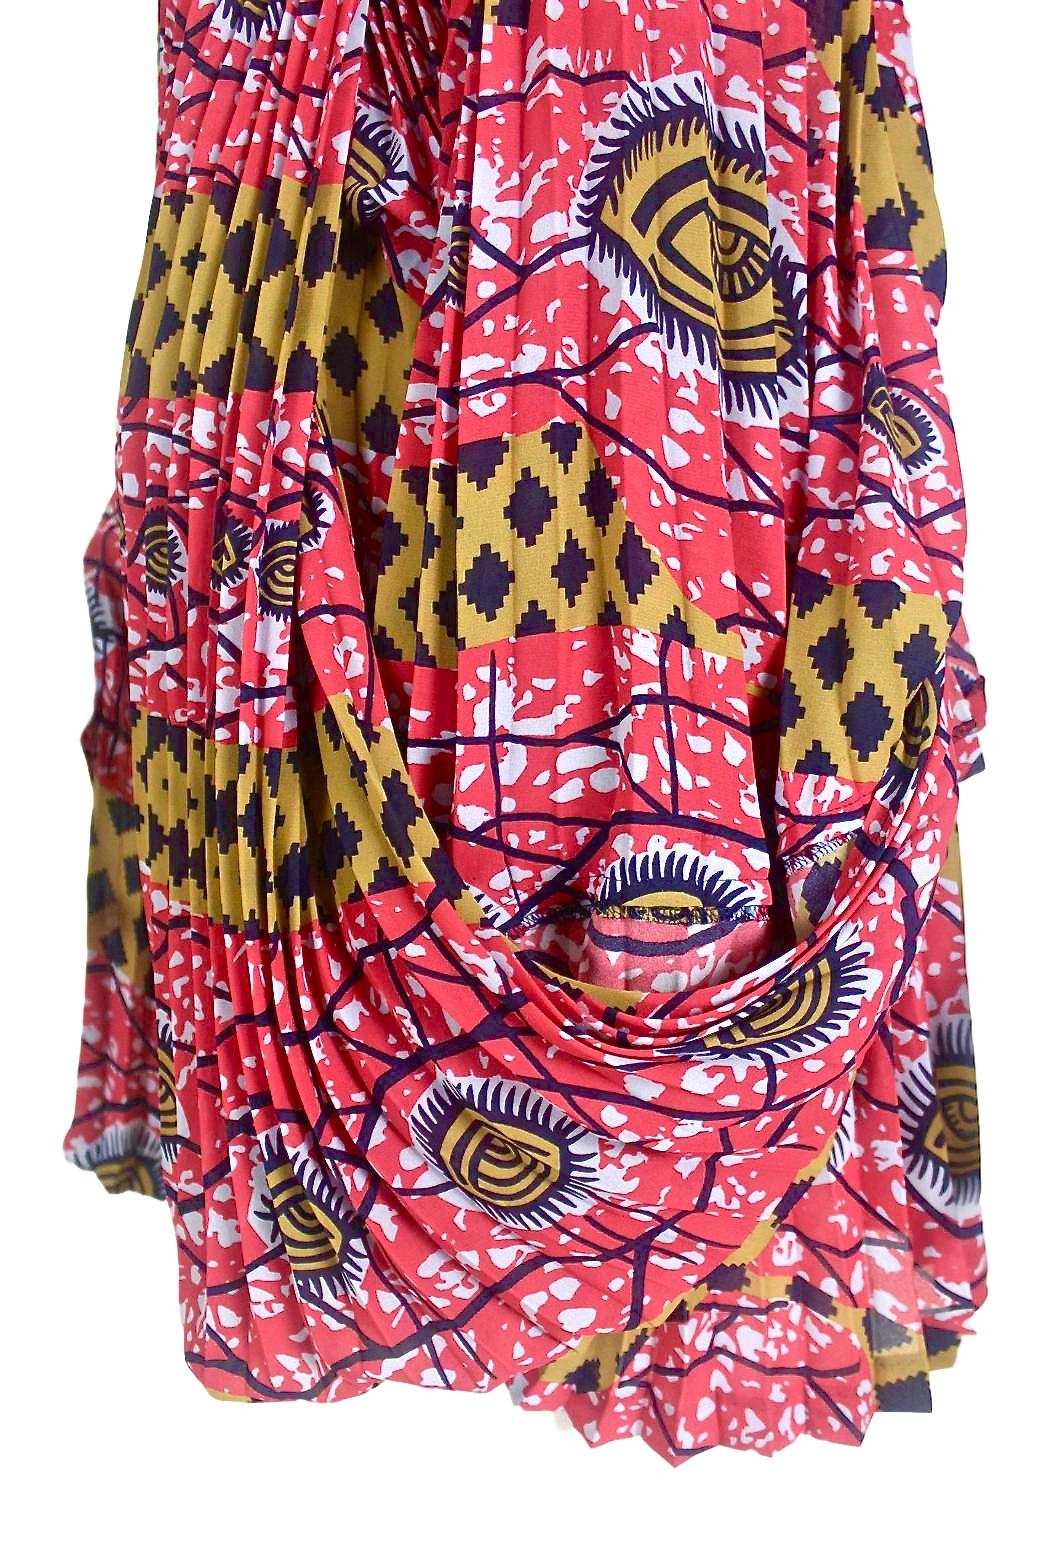 Comme des Garçons Junya Watanabe African Open Back Print Dress AD 2009 For Sale 9